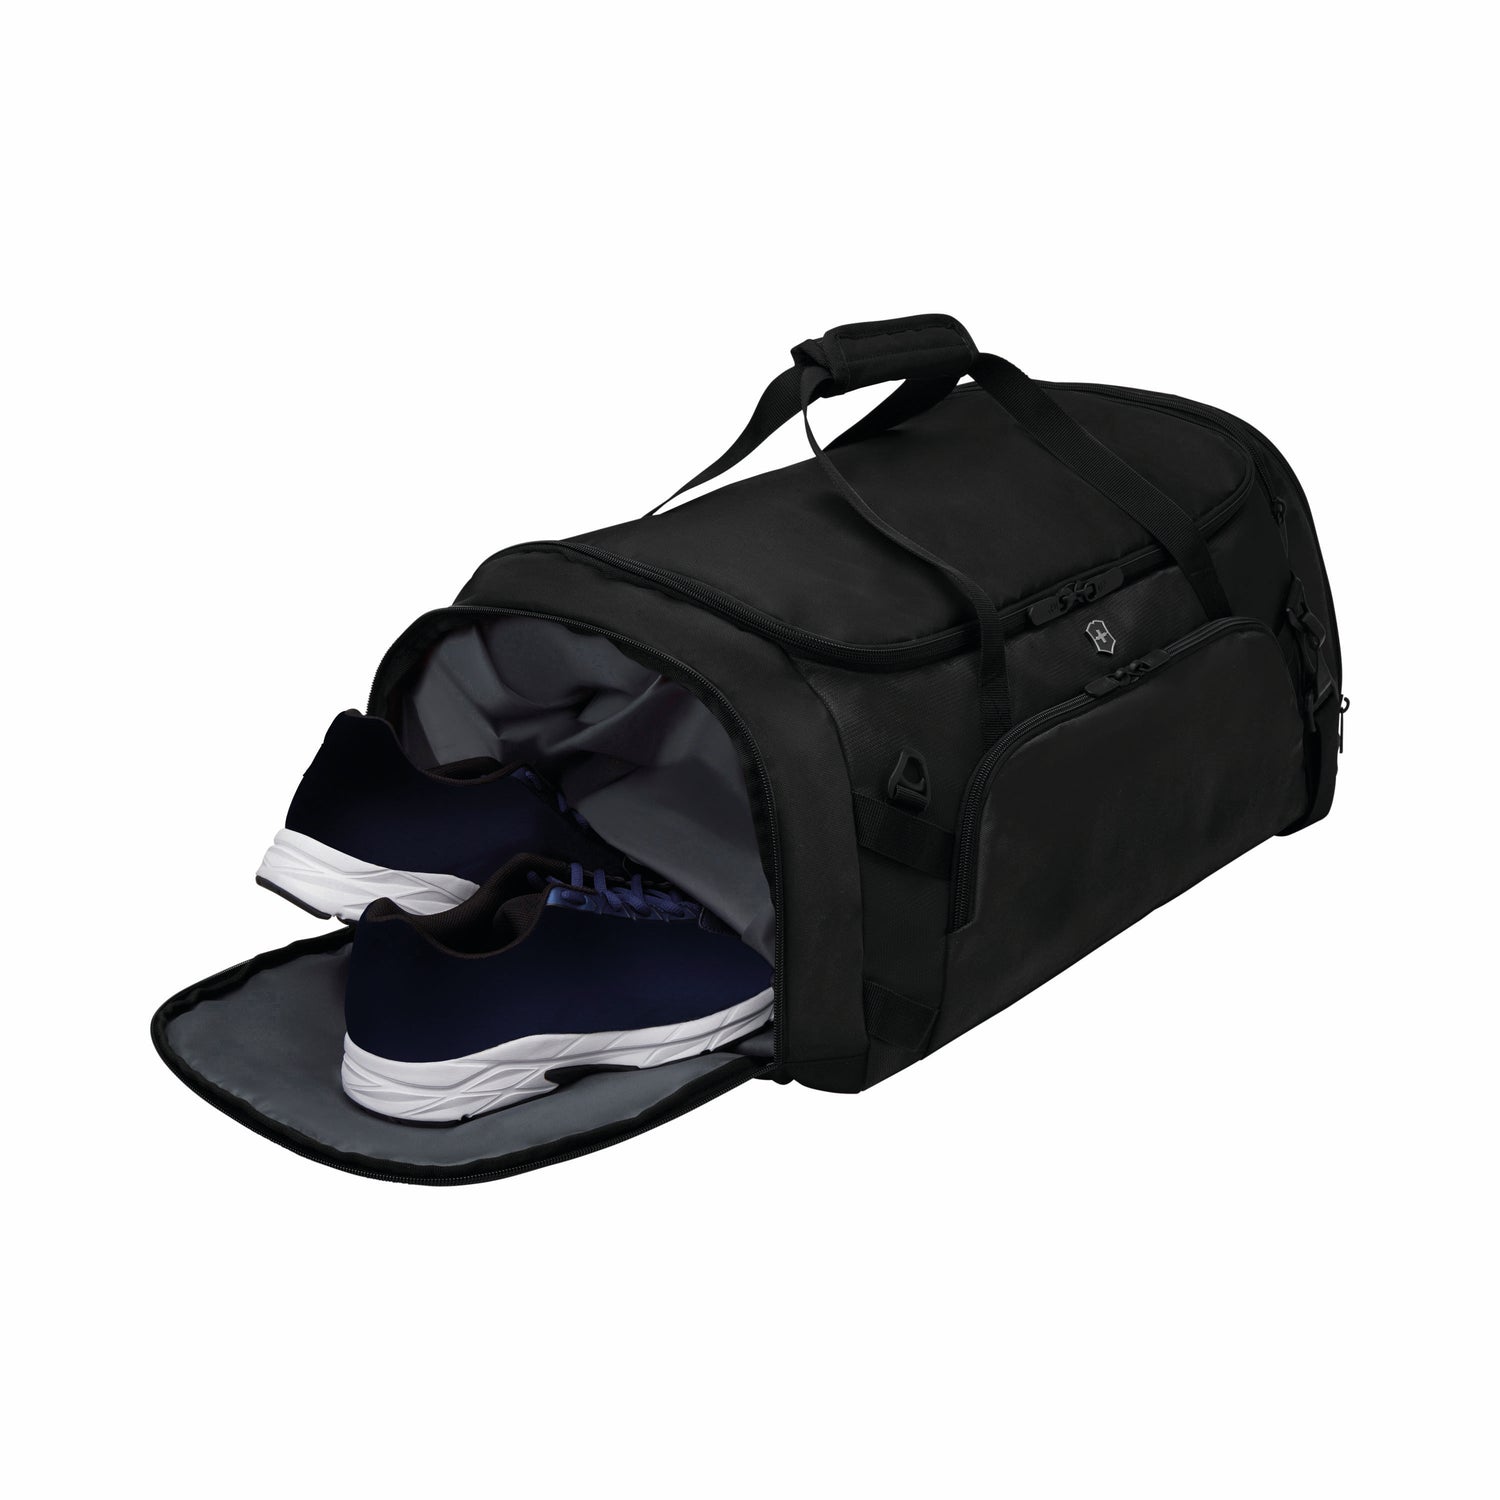 Sport EVO, 2-in-1 Backpack/Duffel, Black victorinox travel gear VTG 611422 Kunzi Shop 7